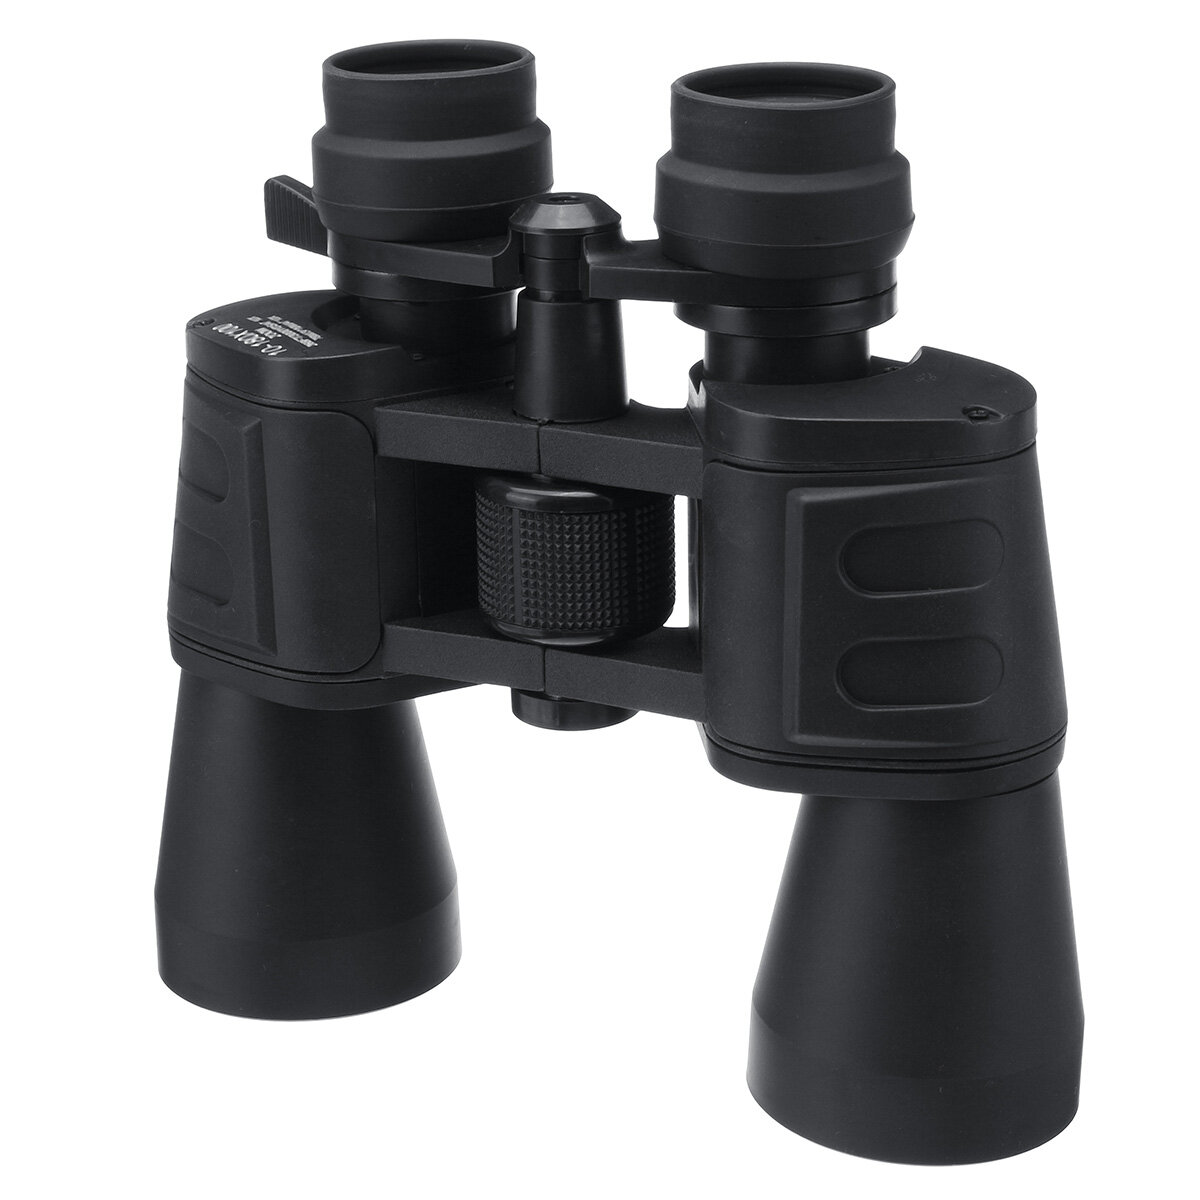 

8-24x HD бинокль портативный наблюдение за птицами мощный телескоп ночного видения На открытом воздухе охота путешествия